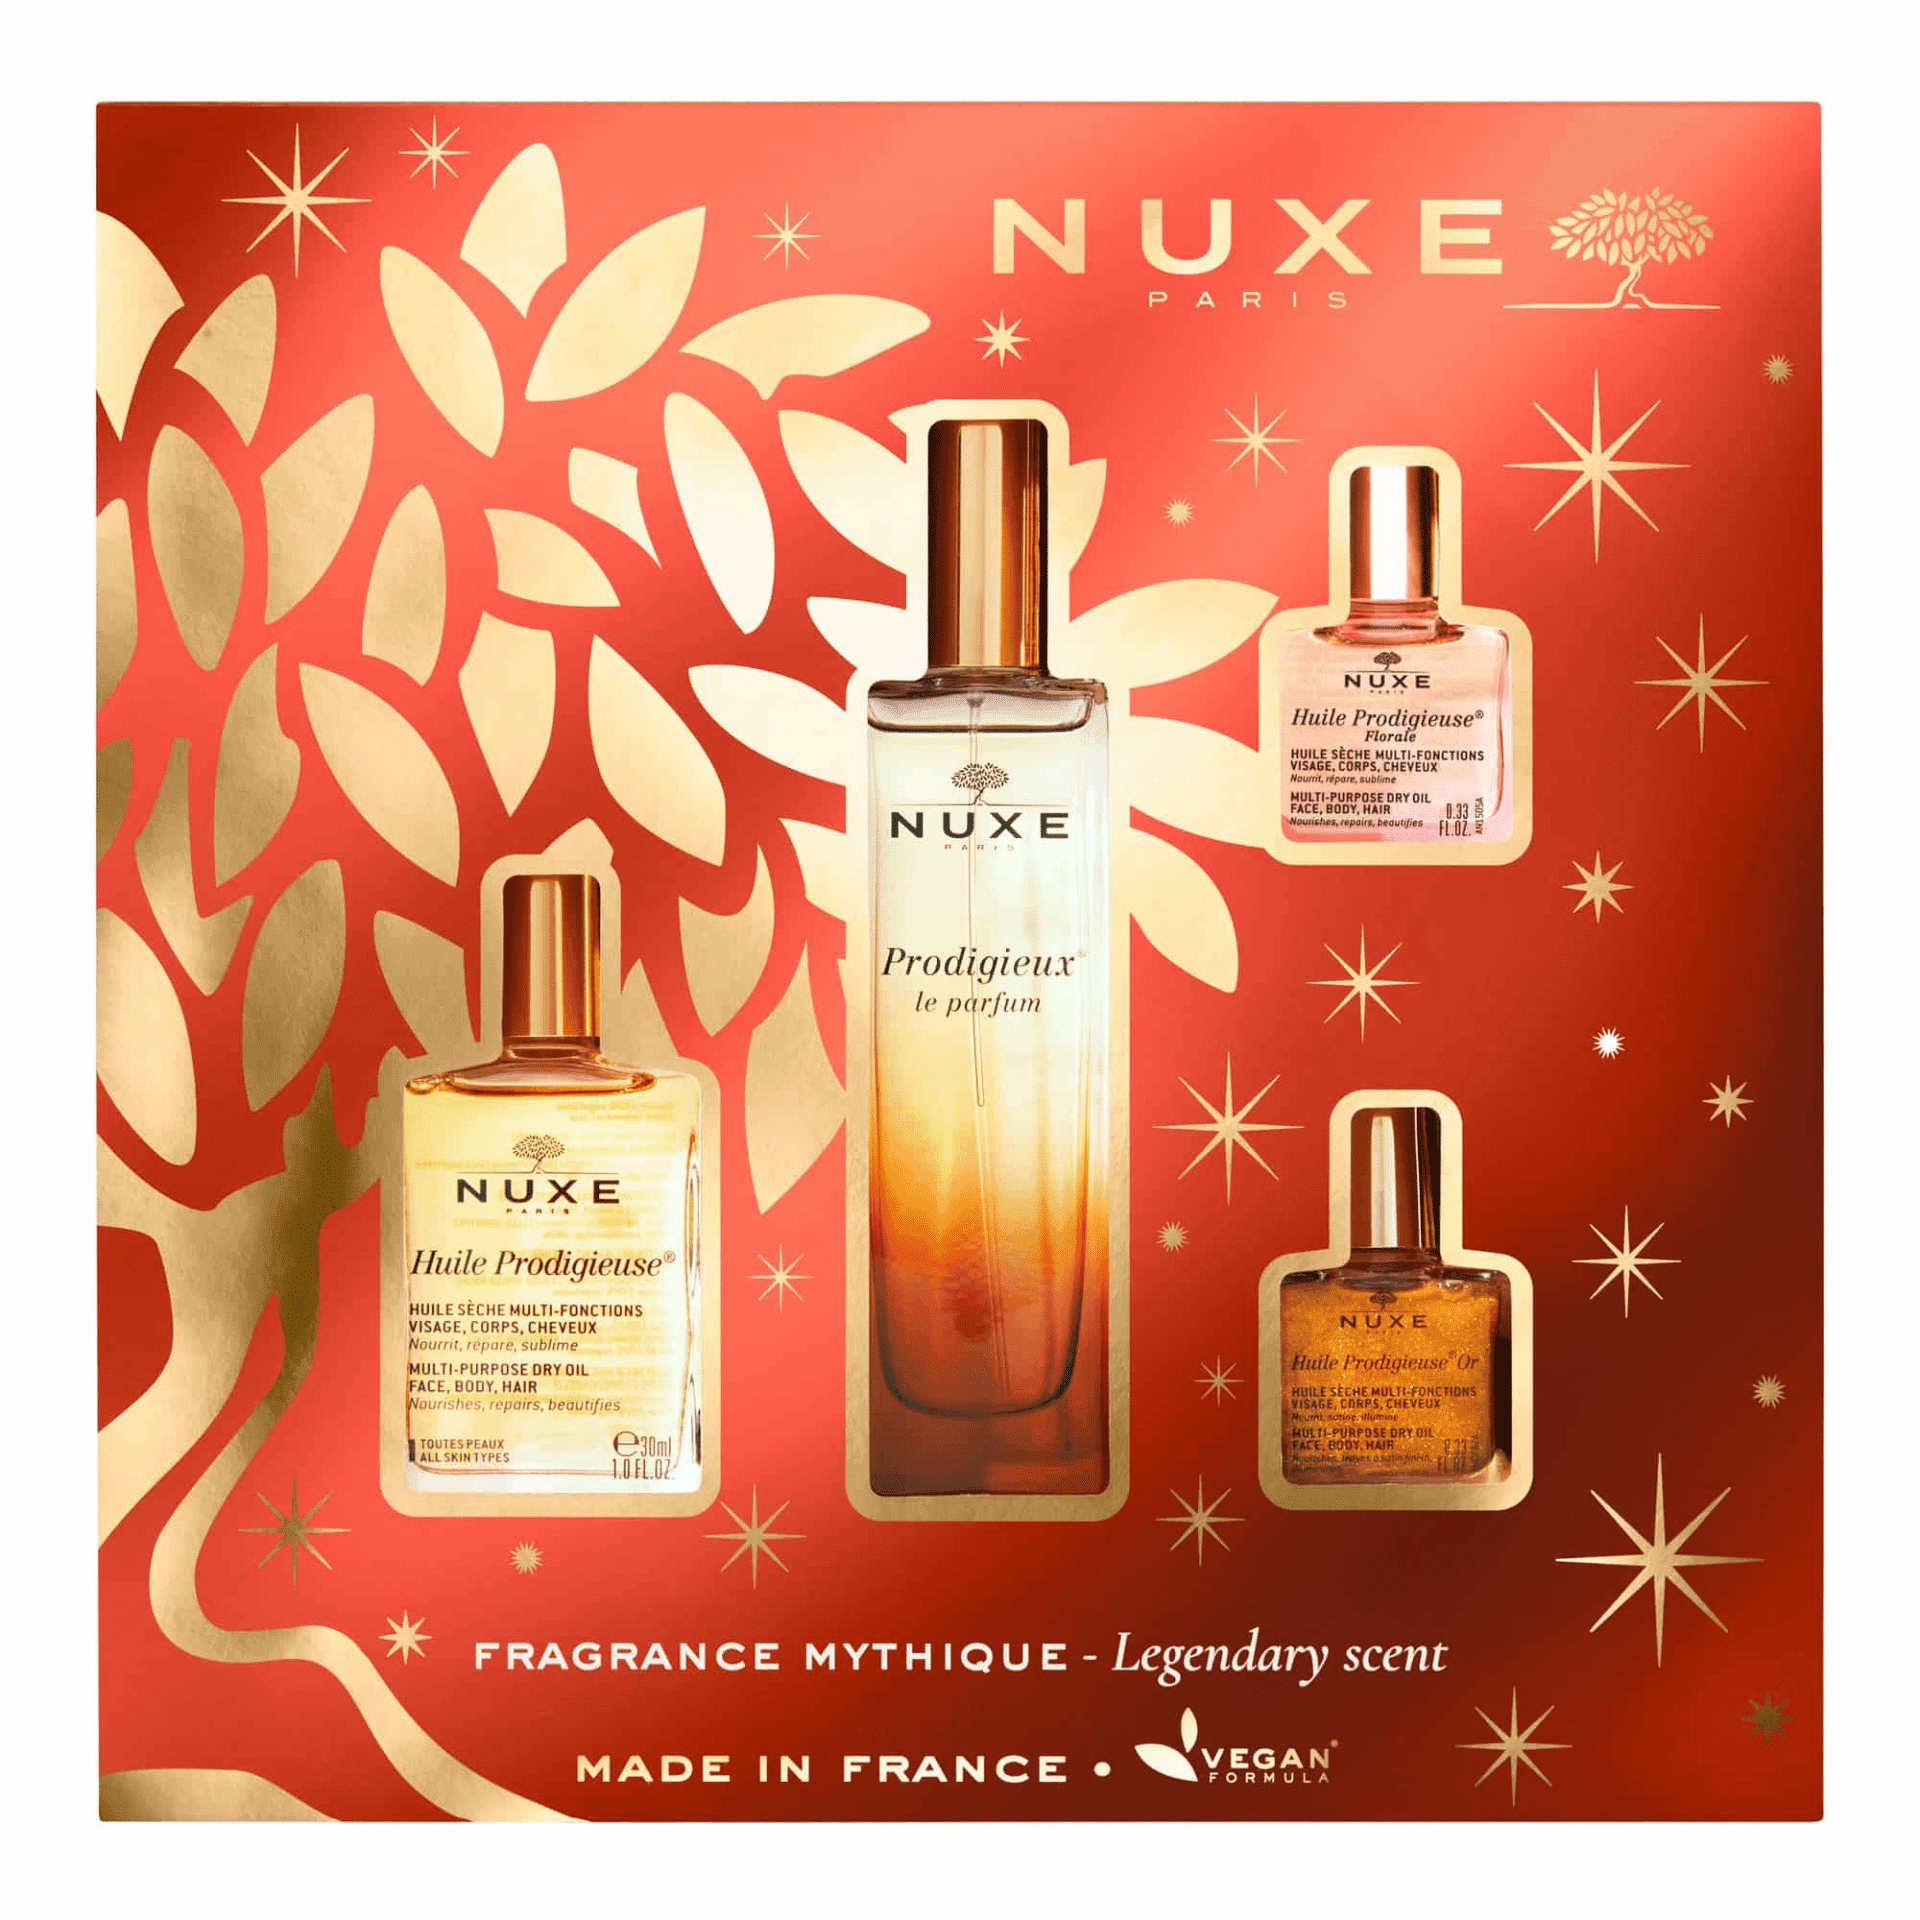 Nuxe Prodigieux Fragrance Mythique Parfum Coffret Noël 1 coffret